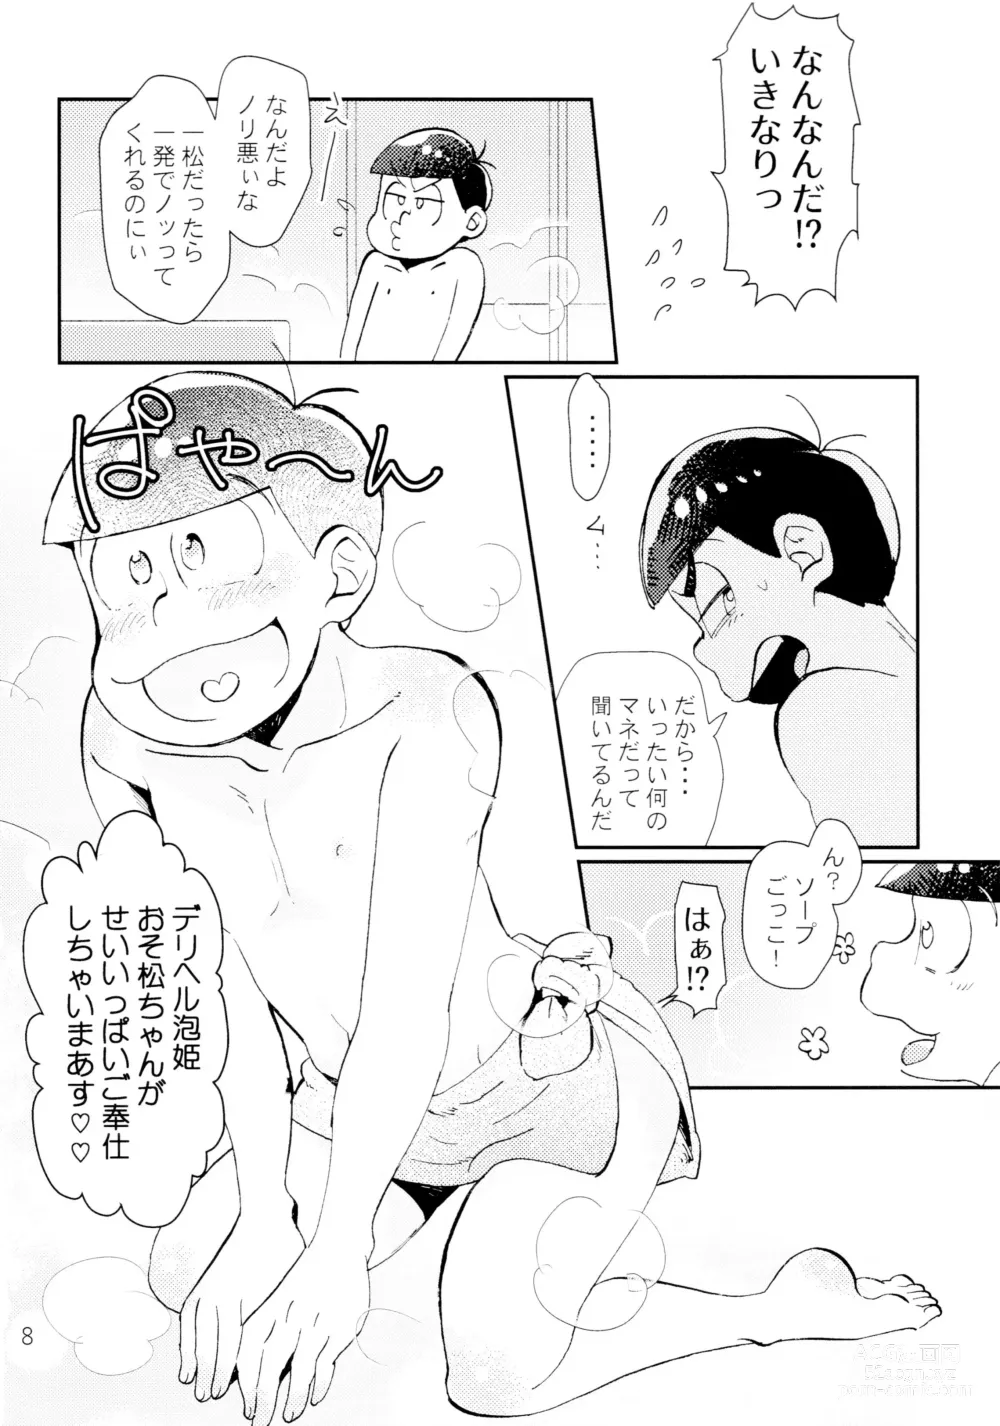 Page 8 of doujinshi Lovely Honey Punkish